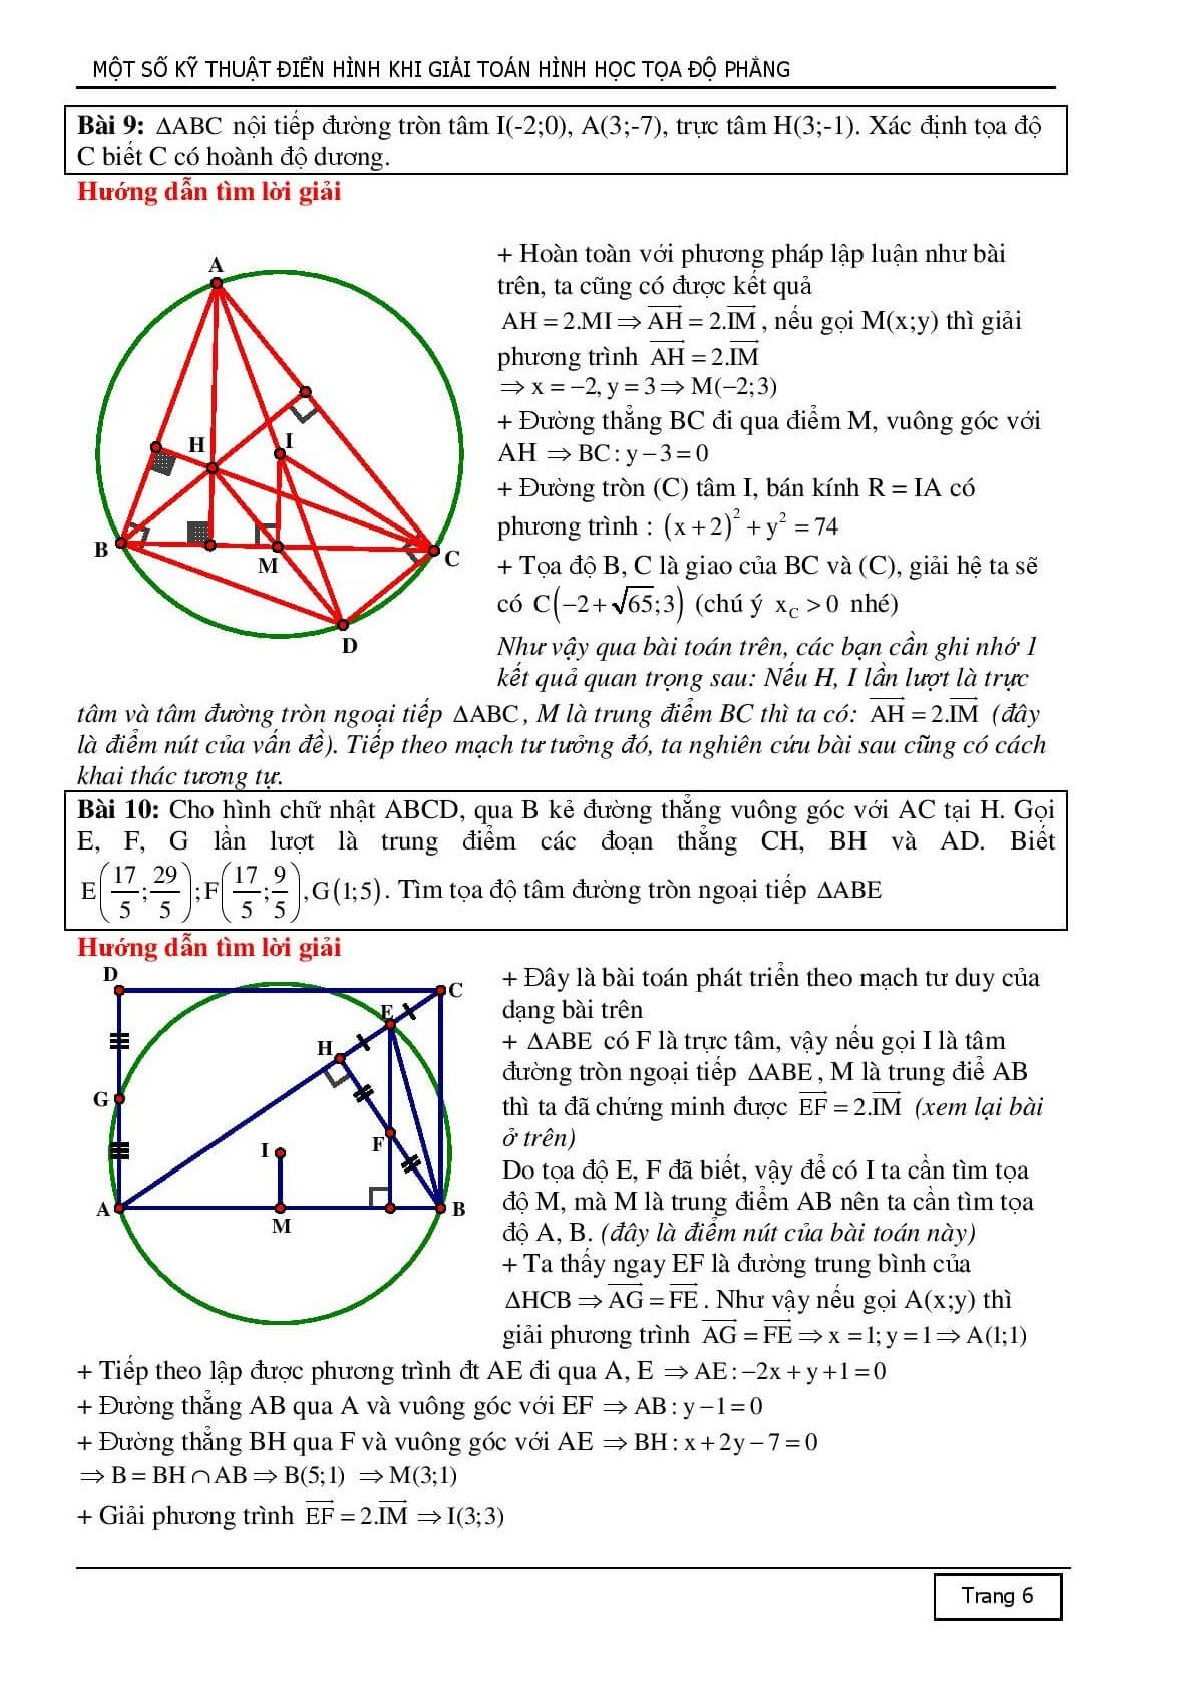 10 kỹ thuật tiếp cận để giải một bài toán hình học Oxy (trang 6)